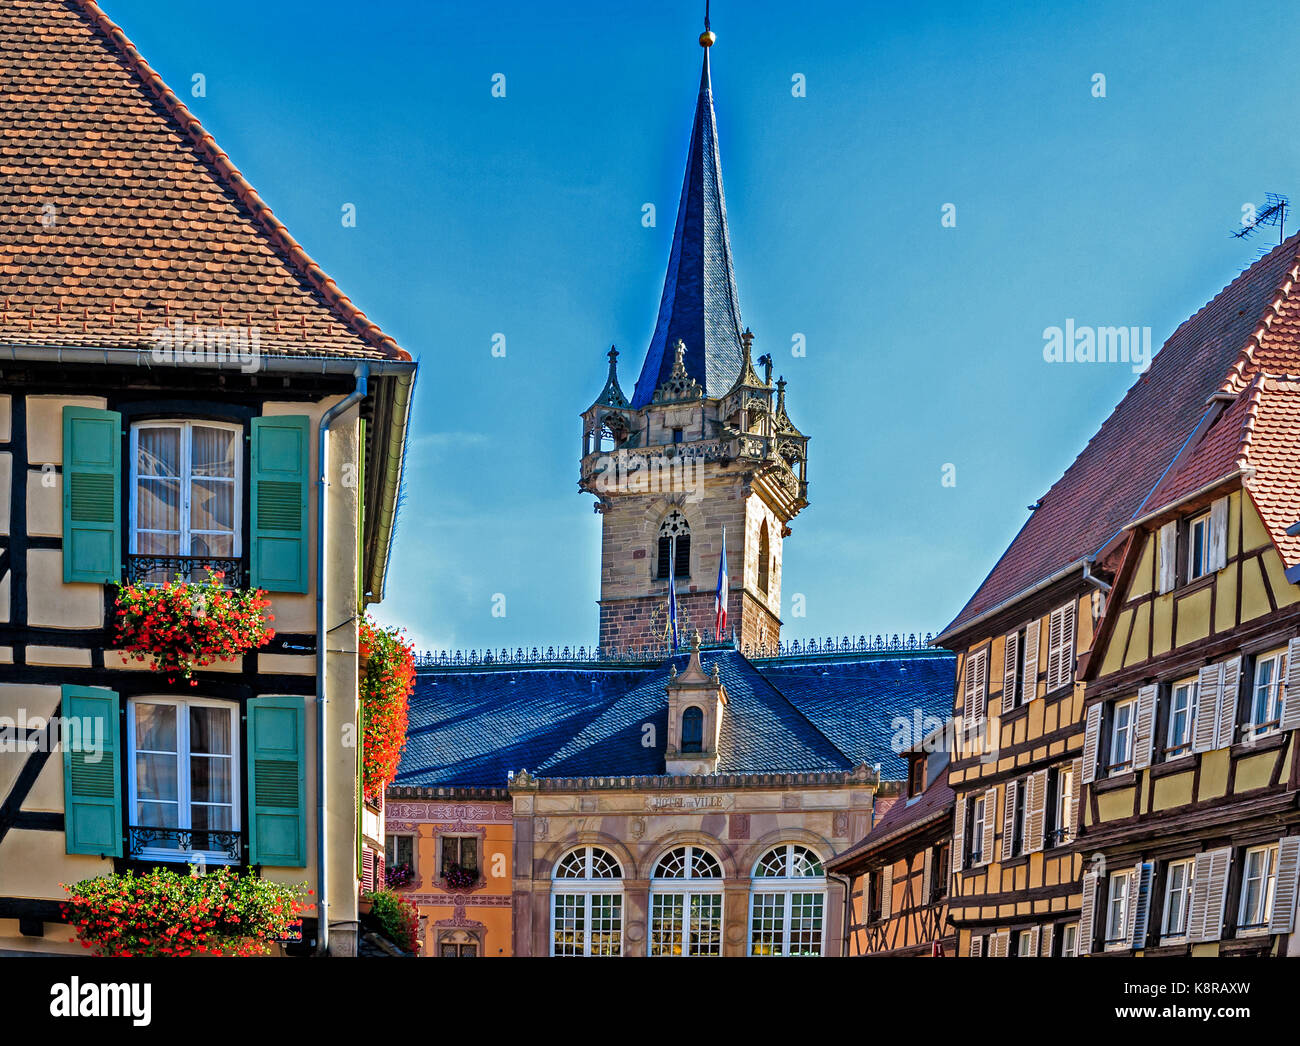 Il pittoresco mercato di Obernai, una pittoresca cittadina nei pressi di Strasburgo, Alsazia, Francia Foto Stock